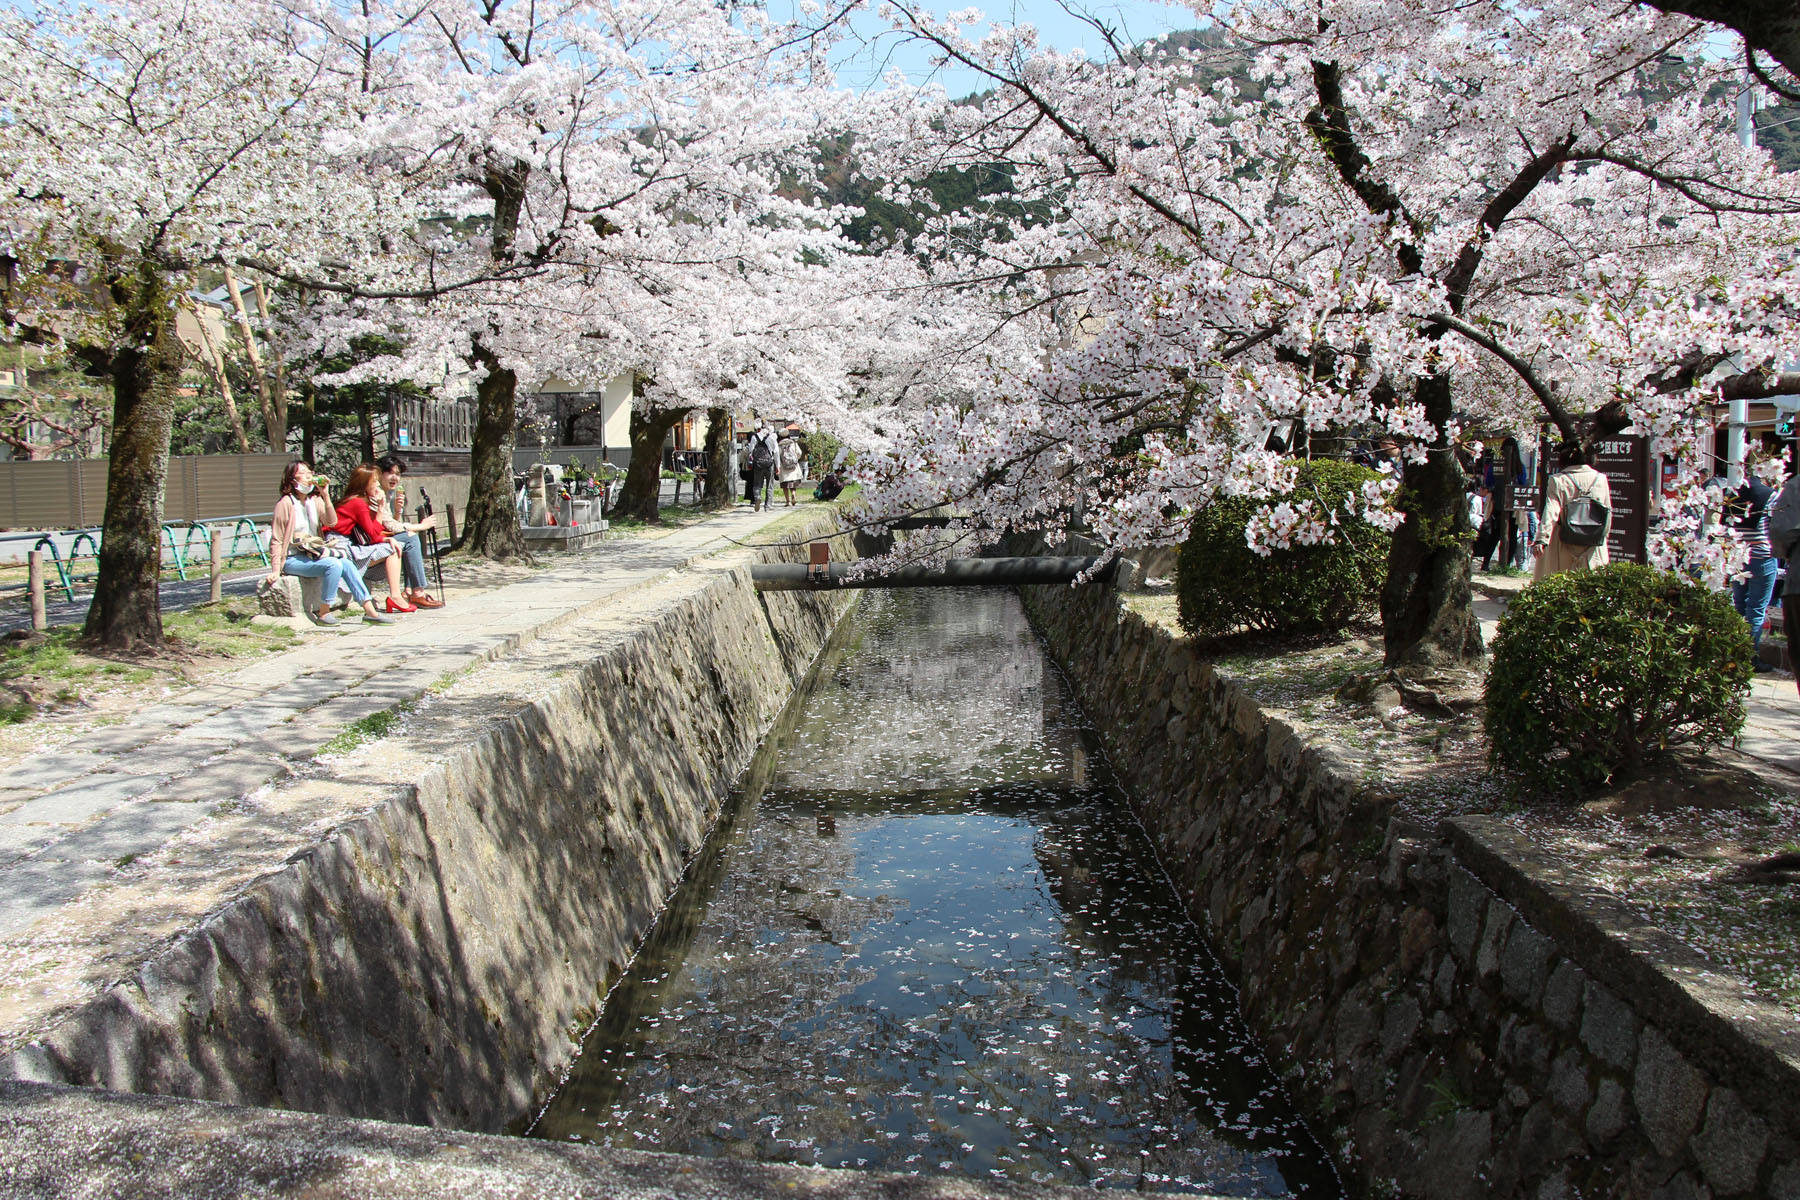 哲学の道の写真 - 京都の観光地 - 京都観光ネット